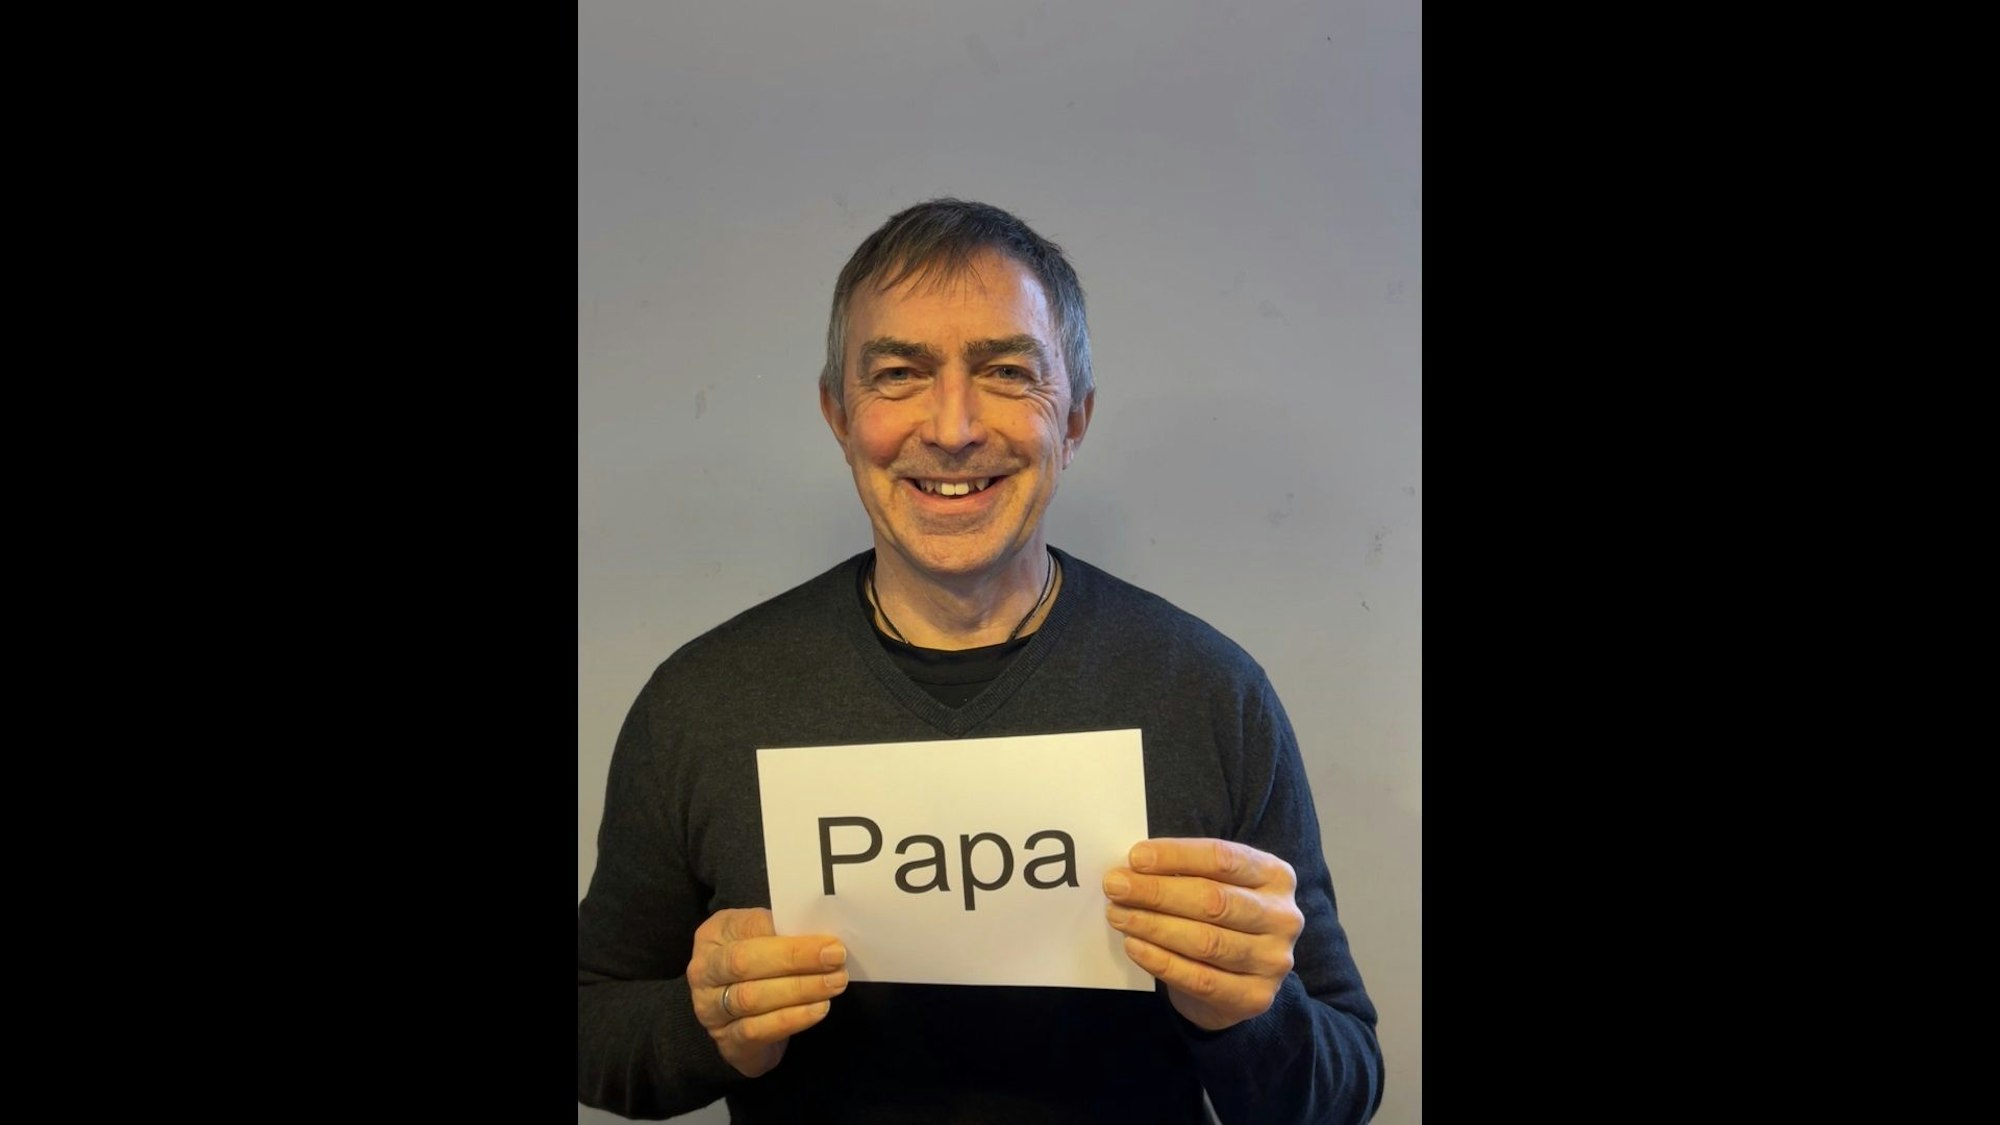 Ralf Gebhardt hält ein Schild vor seiner Brust mit der Aufschrift "Papa".